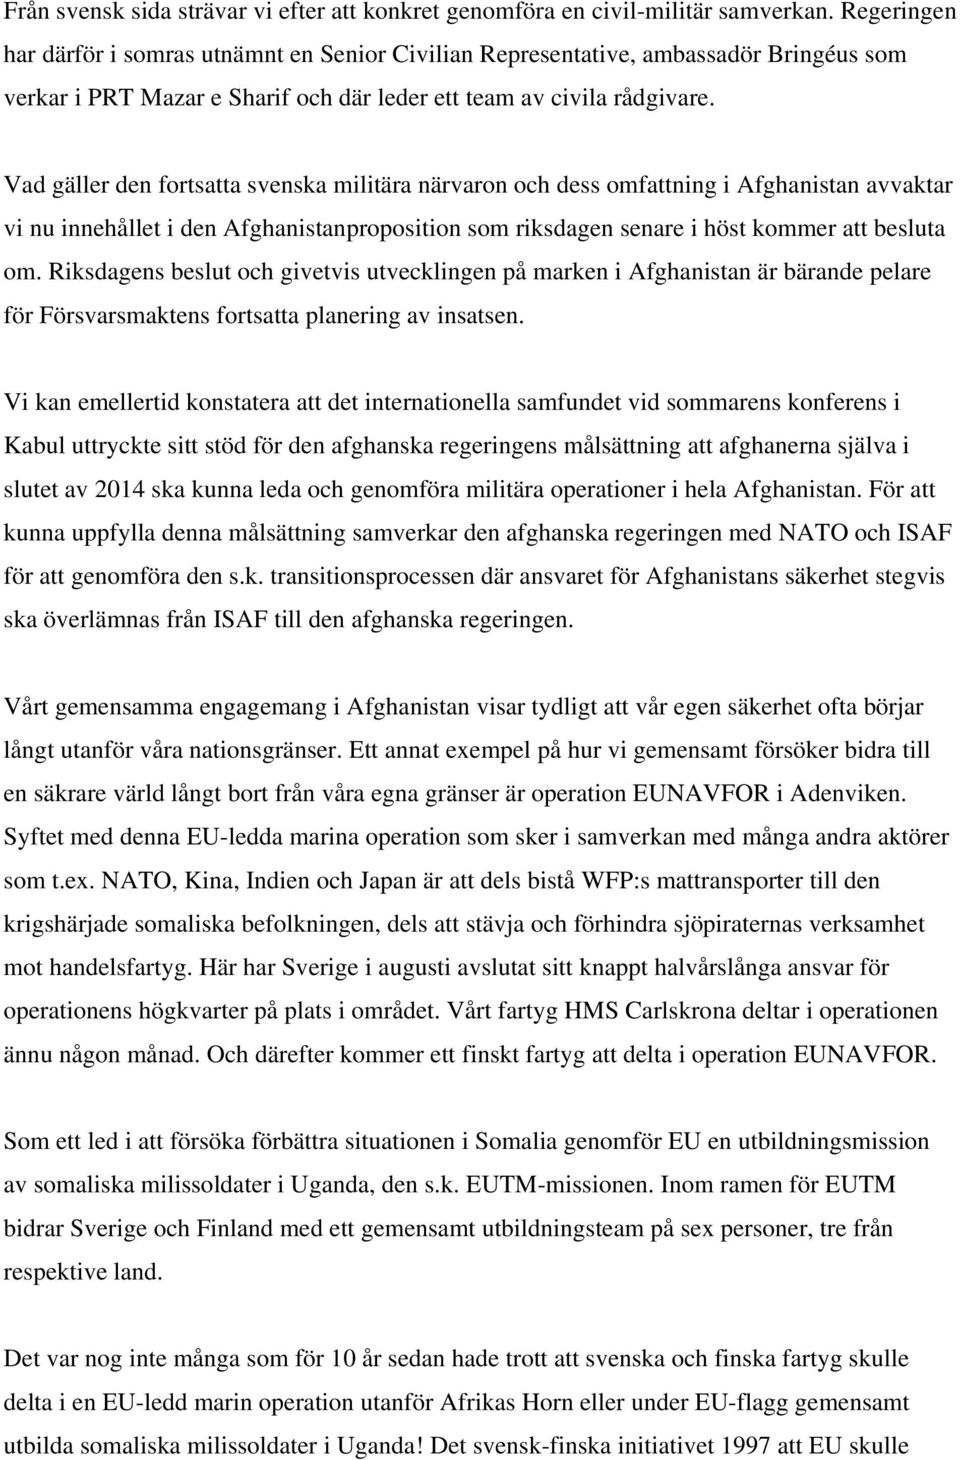 Vad gäller den fortsatta svenska militära närvaron och dess omfattning i Afghanistan avvaktar vi nu innehållet i den Afghanistanproposition som riksdagen senare i höst kommer att besluta om.